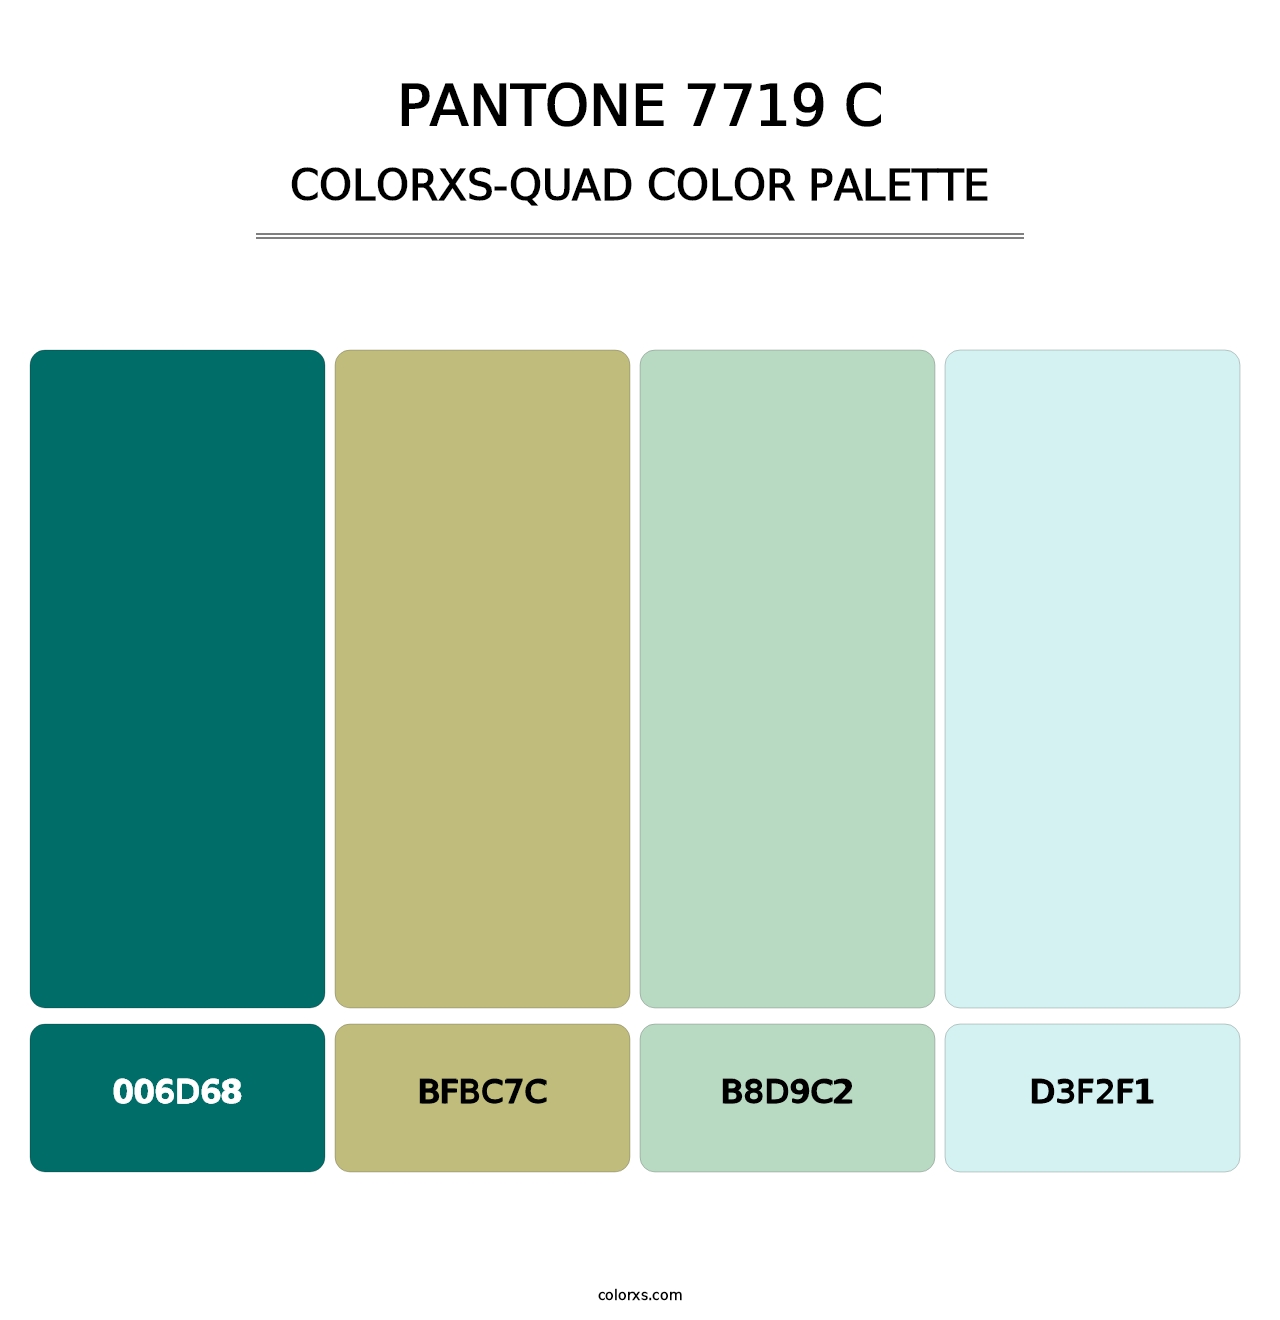 PANTONE 7719 C - Colorxs Quad Palette